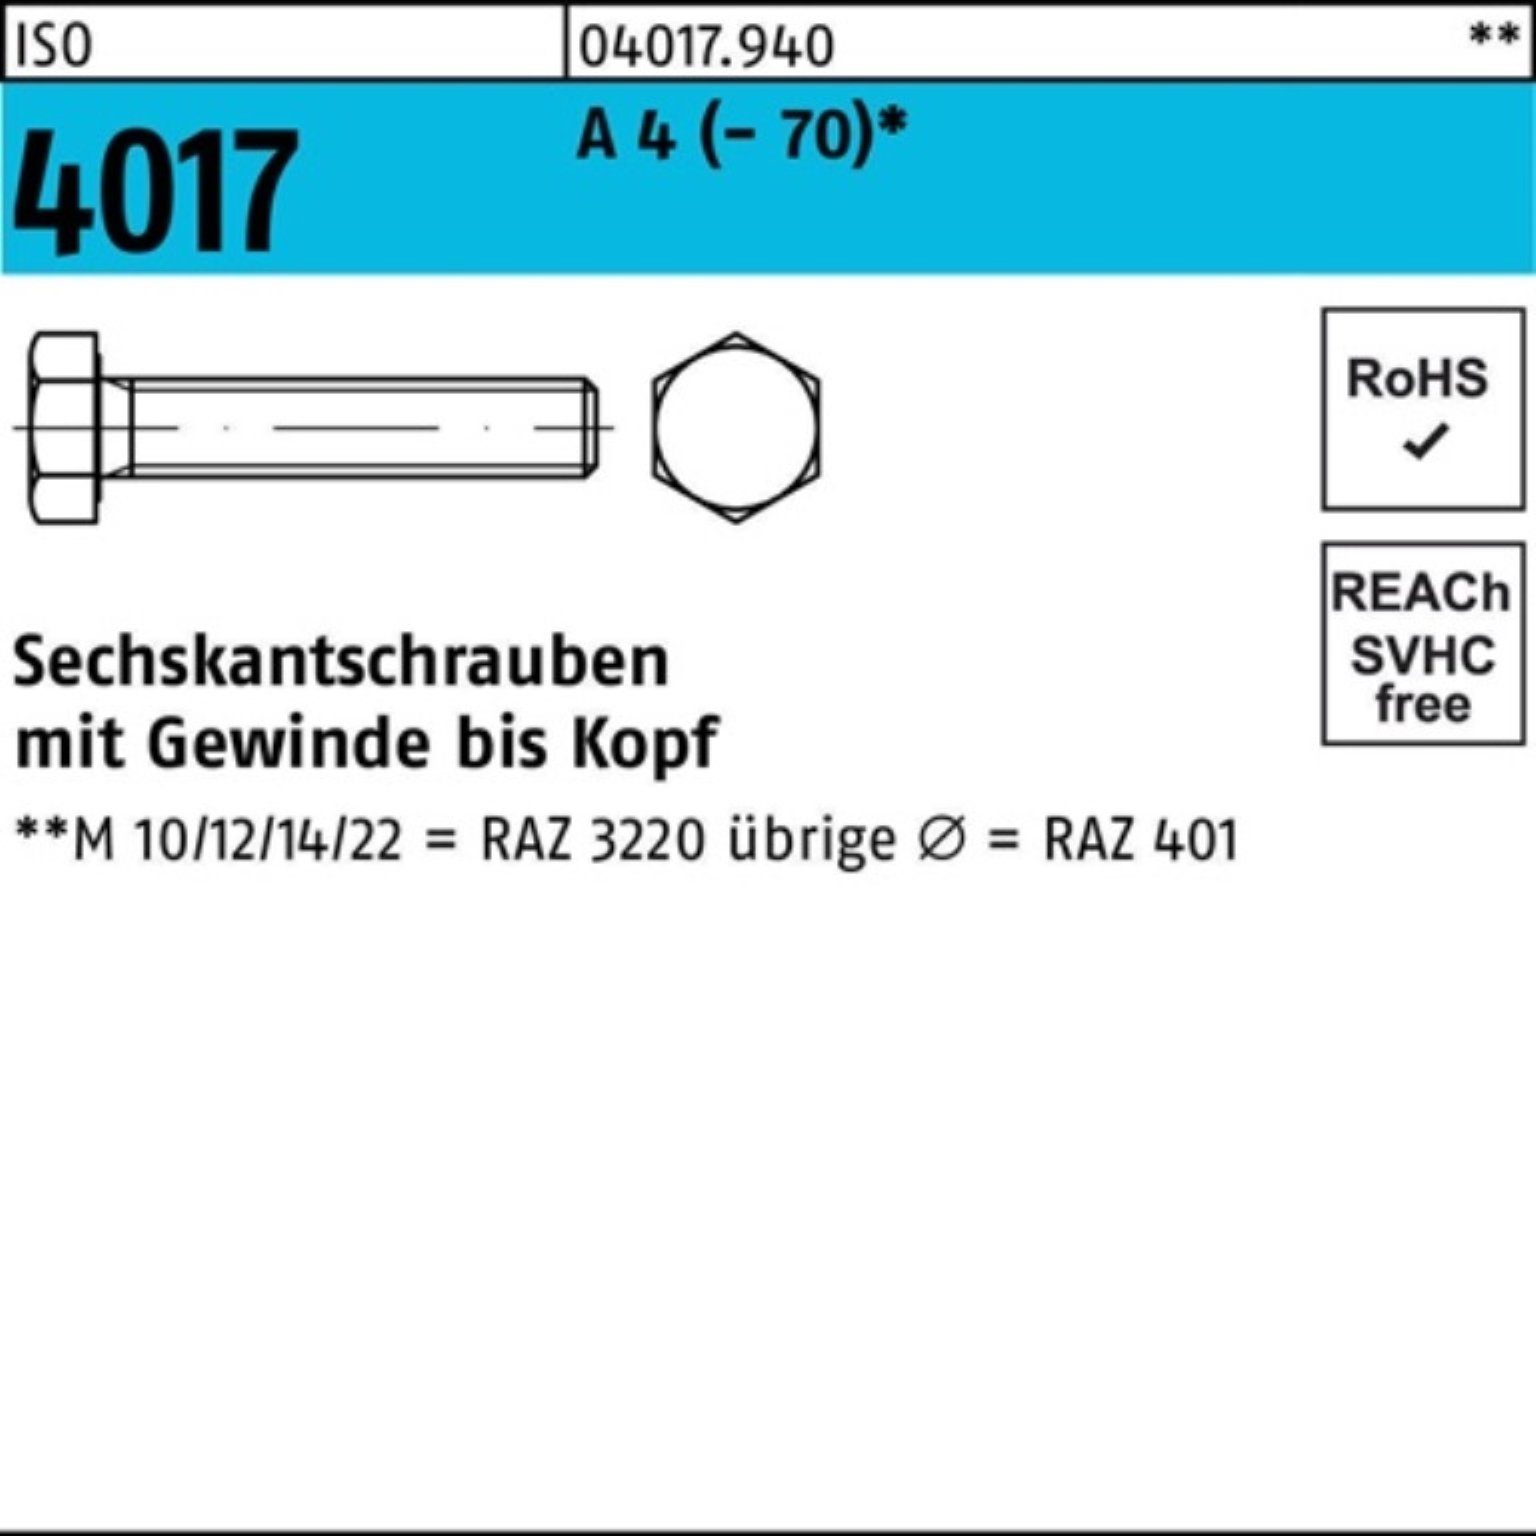 Bufab Sechskantschraube 100er Pack Sechskantschraube ISO 4017 VG M8x 60 A 4 (70) 100 Stück | Schrauben